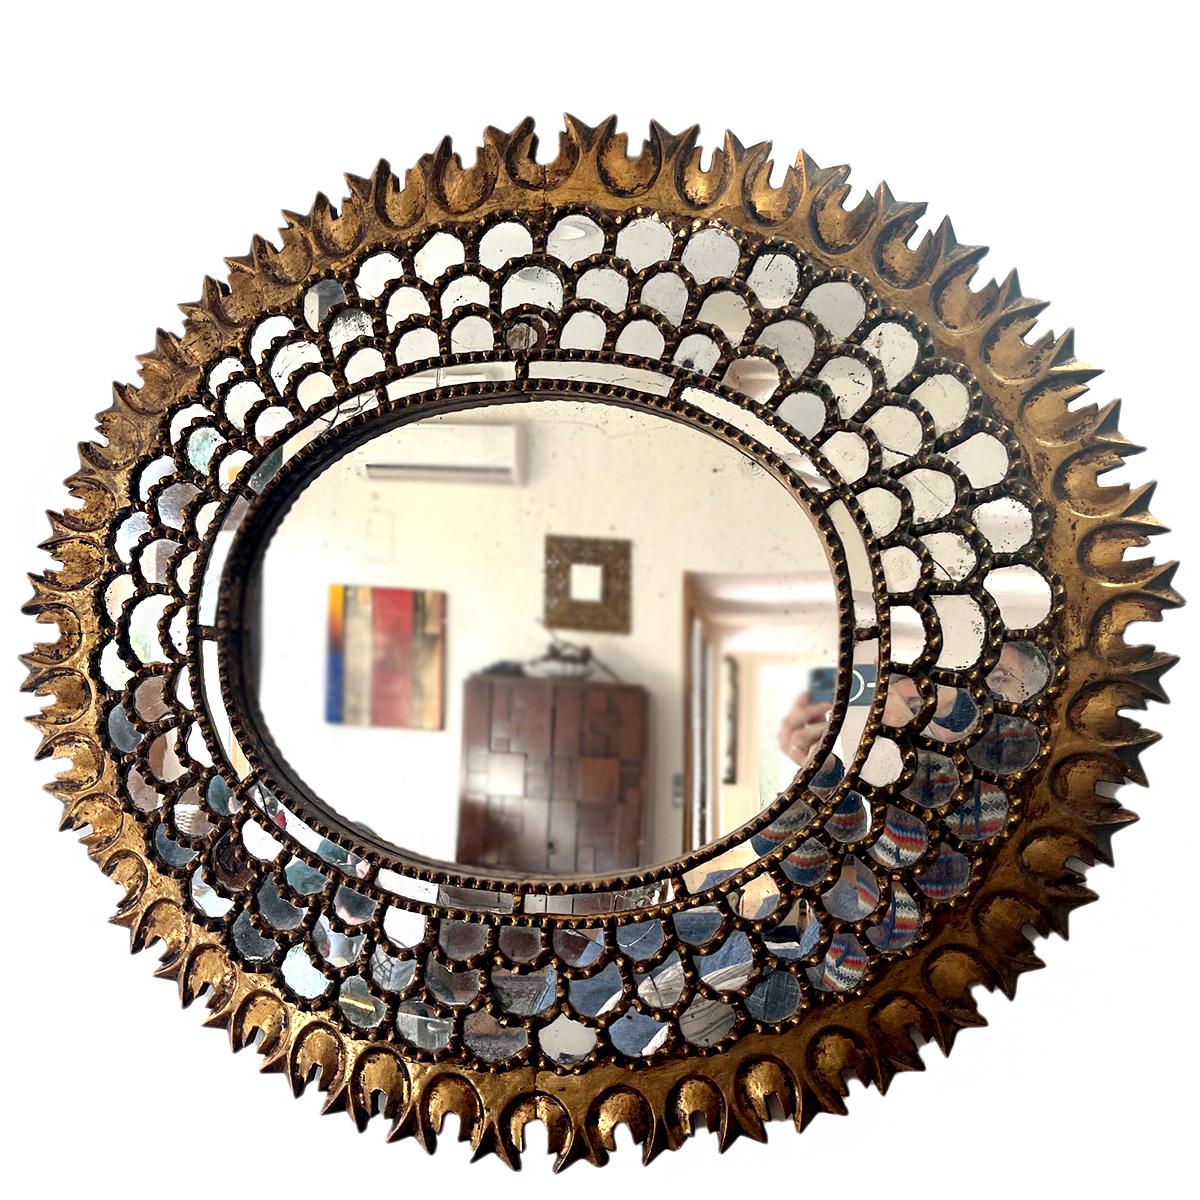  Un grand miroir espagnol ovale des années 1920 avec des inserts de miroir.

Mesures :
Hauteur : 37
Largeur : 41